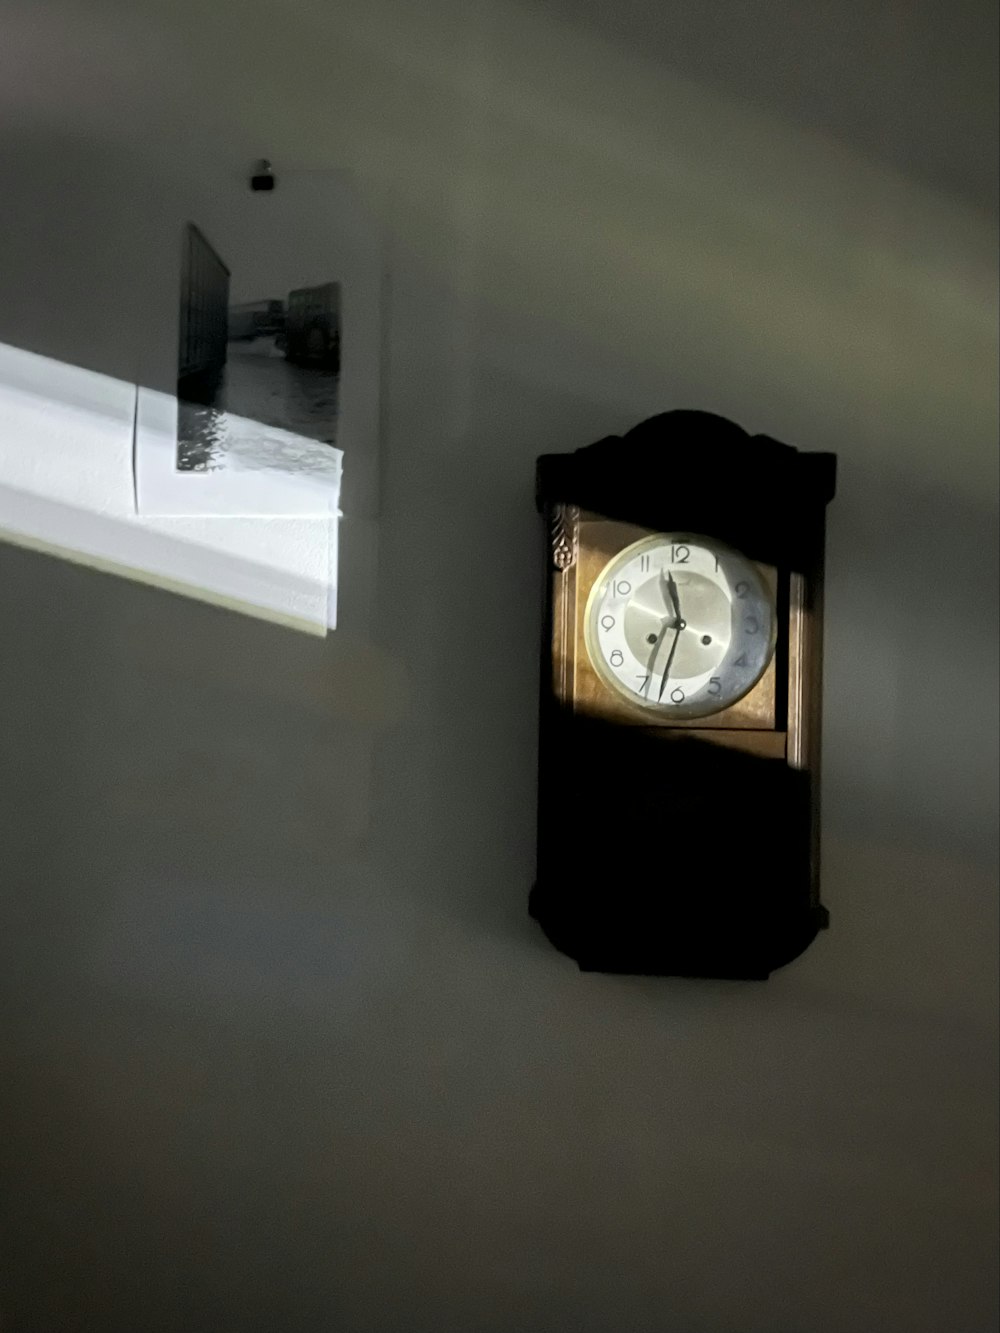 배경에 창문이 있는 벽에 걸린 시계